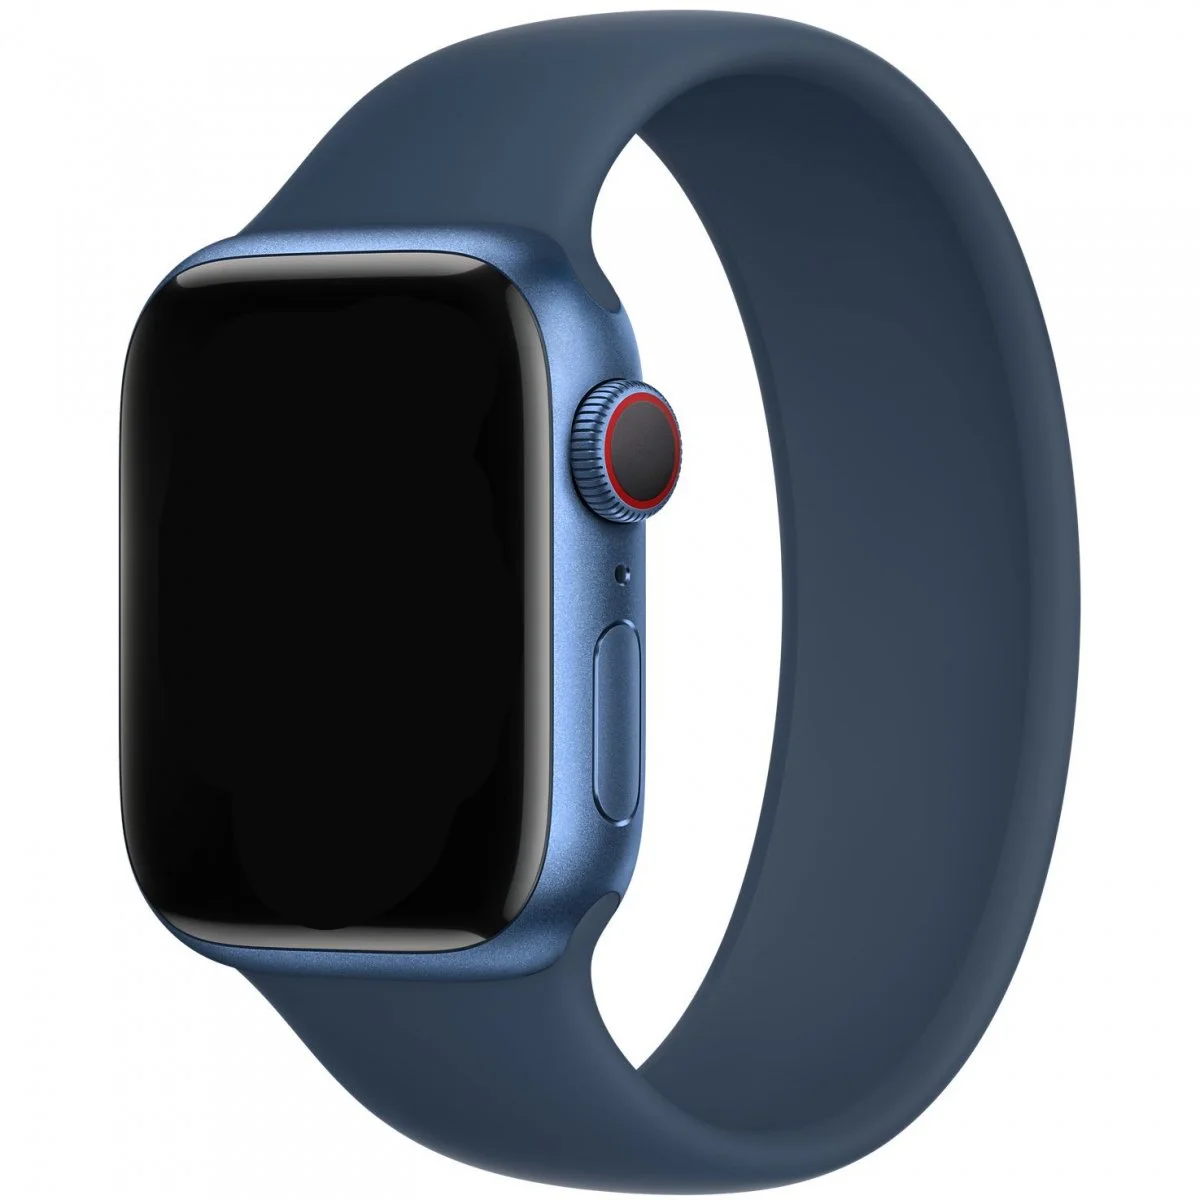 Řemínek iMore Solo Loop Apple Watch Series 1/2/3 42mm - Hlubokomořsky modrá (XS)